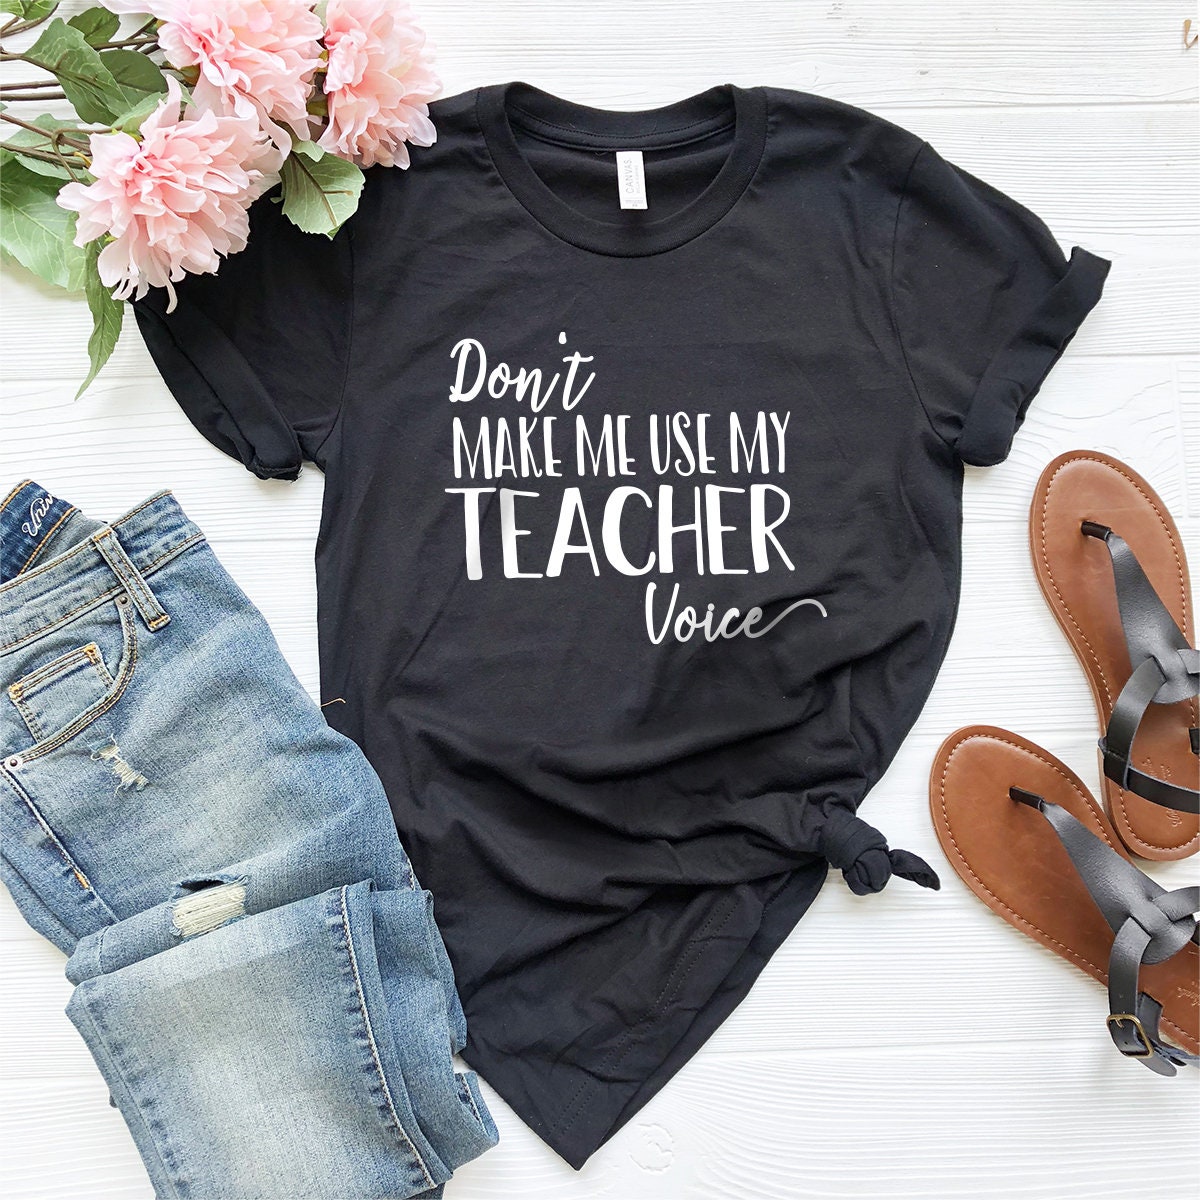 Funny Teacher Tee, Gift For Best Teacher, Teacher Appreciation T-Shirt, Teacher Life Shirt, Teacher Cute Gifts, Personalized Teacher Gift - Fastdeliverytees.com